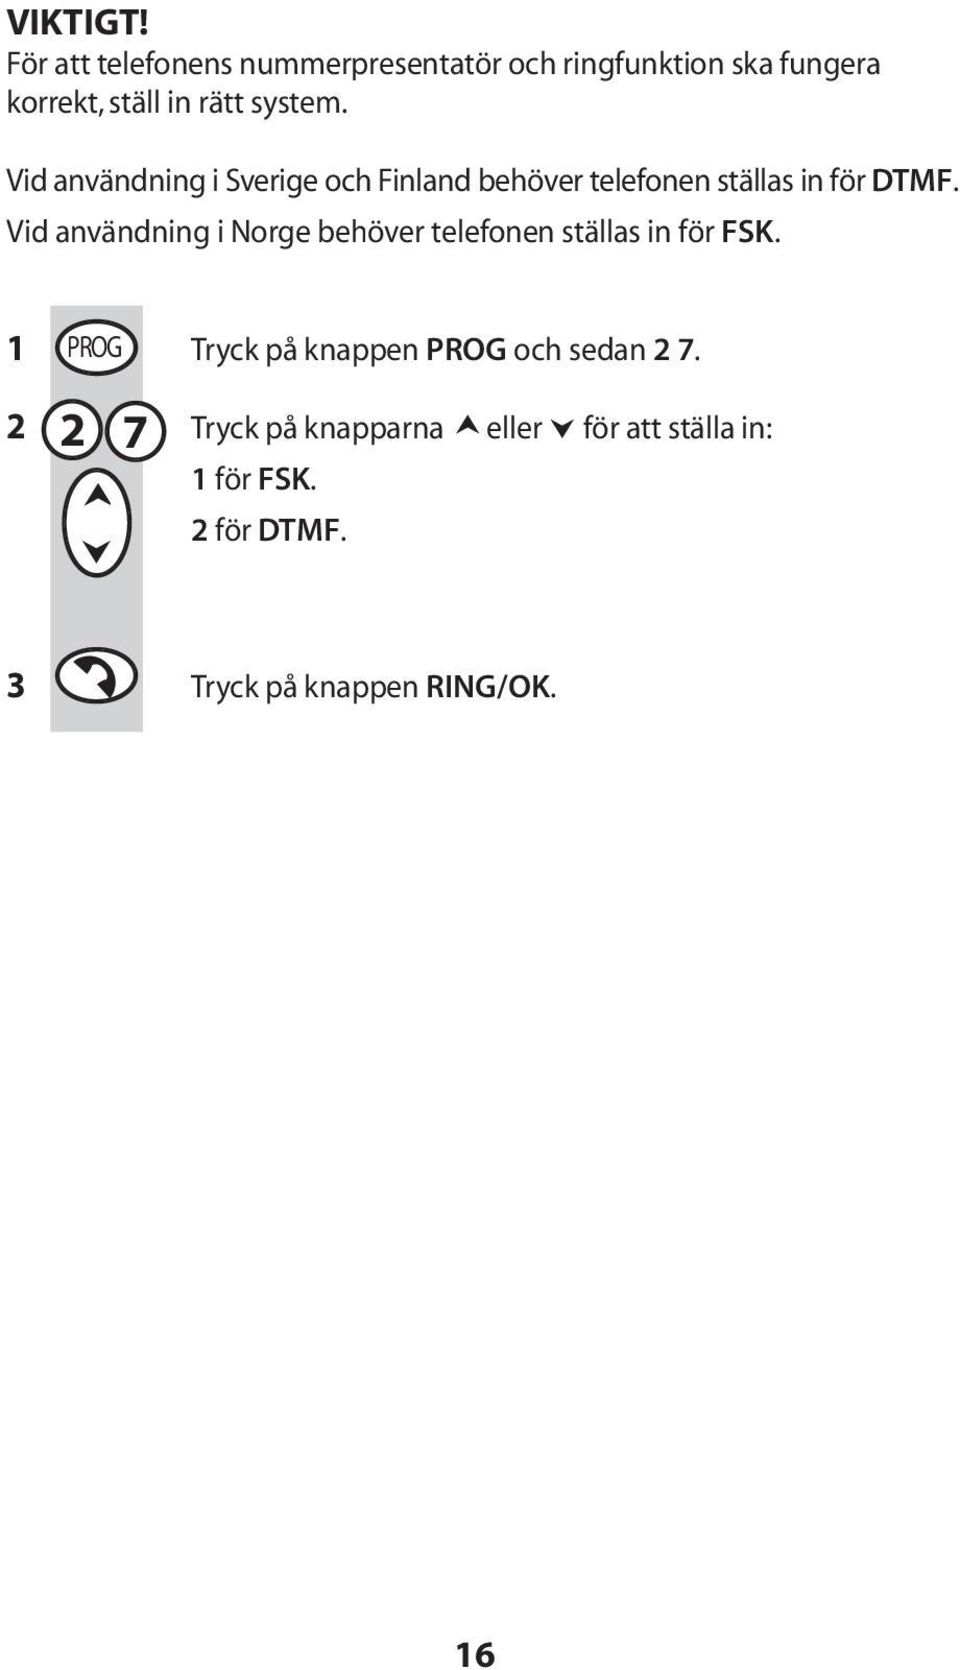 Vid användning i Sverige och Finland behöver telefonen ställas in fö r DTMF.